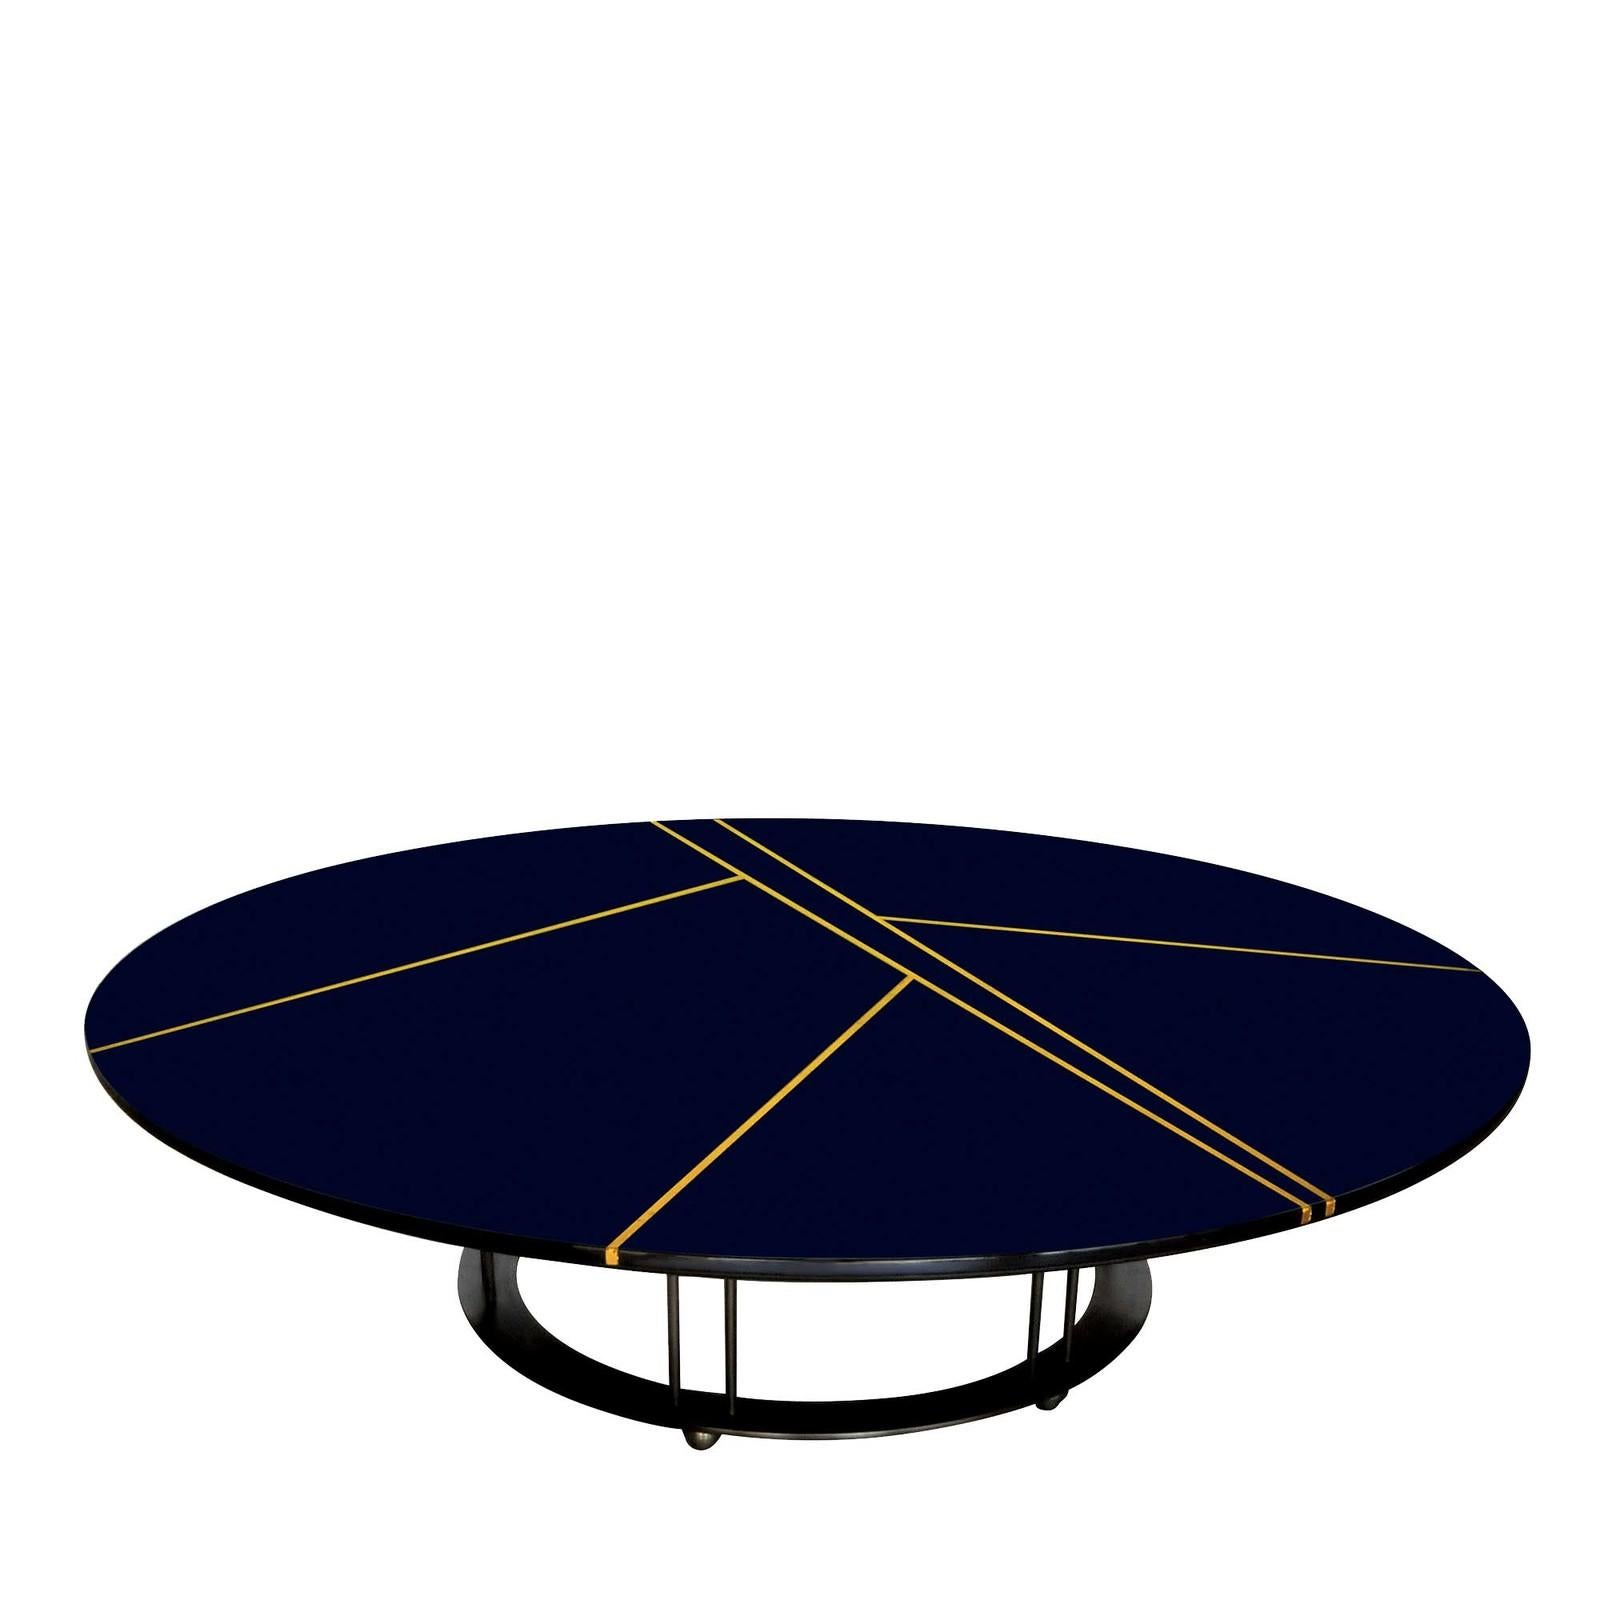 Cette table basse sculpturale sera le point focal de tout intérieur moderne. Le profil bas est défini par des détails minutieux, le plateau rond en bois laqué en polyuréthane à l'encre et contrastant avec le motif linéaire des lattes en feuille